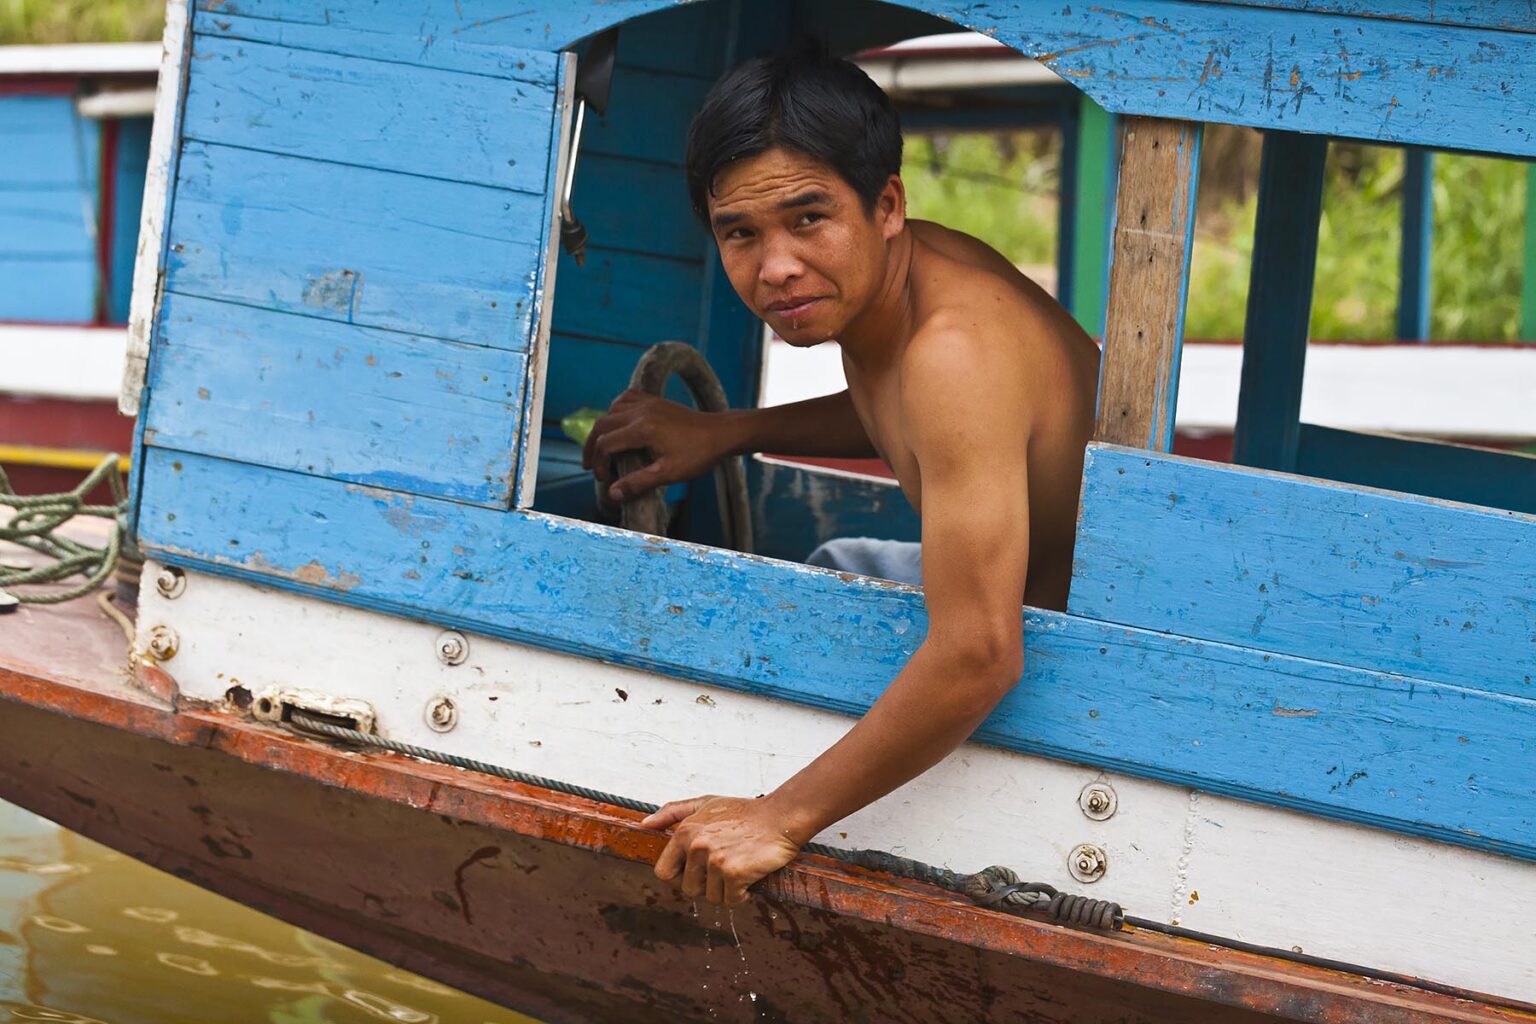 LAOTIAN man drives a boat on the MEKONG RIVER- LUANG PRABANG, LAOS